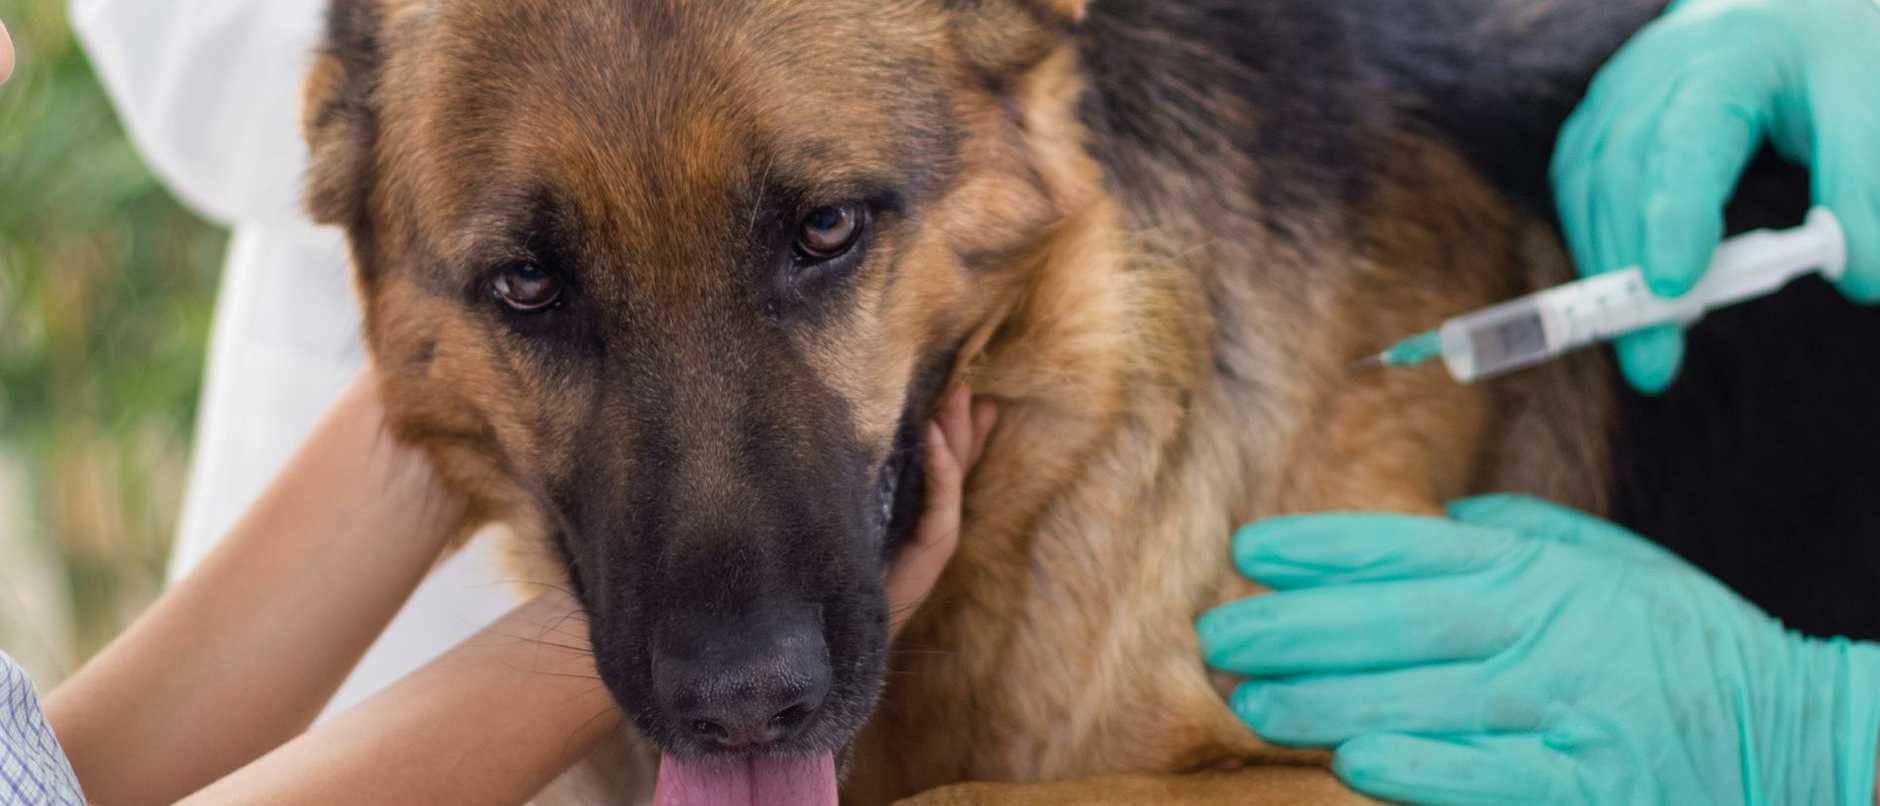 Демодекоз (подкожный клещ) у собак - симптомы, диагностика, лечение и профилактика
демодекоз (подкожный клещ) у собак - симптомы, диагностика, лечение и профилактика